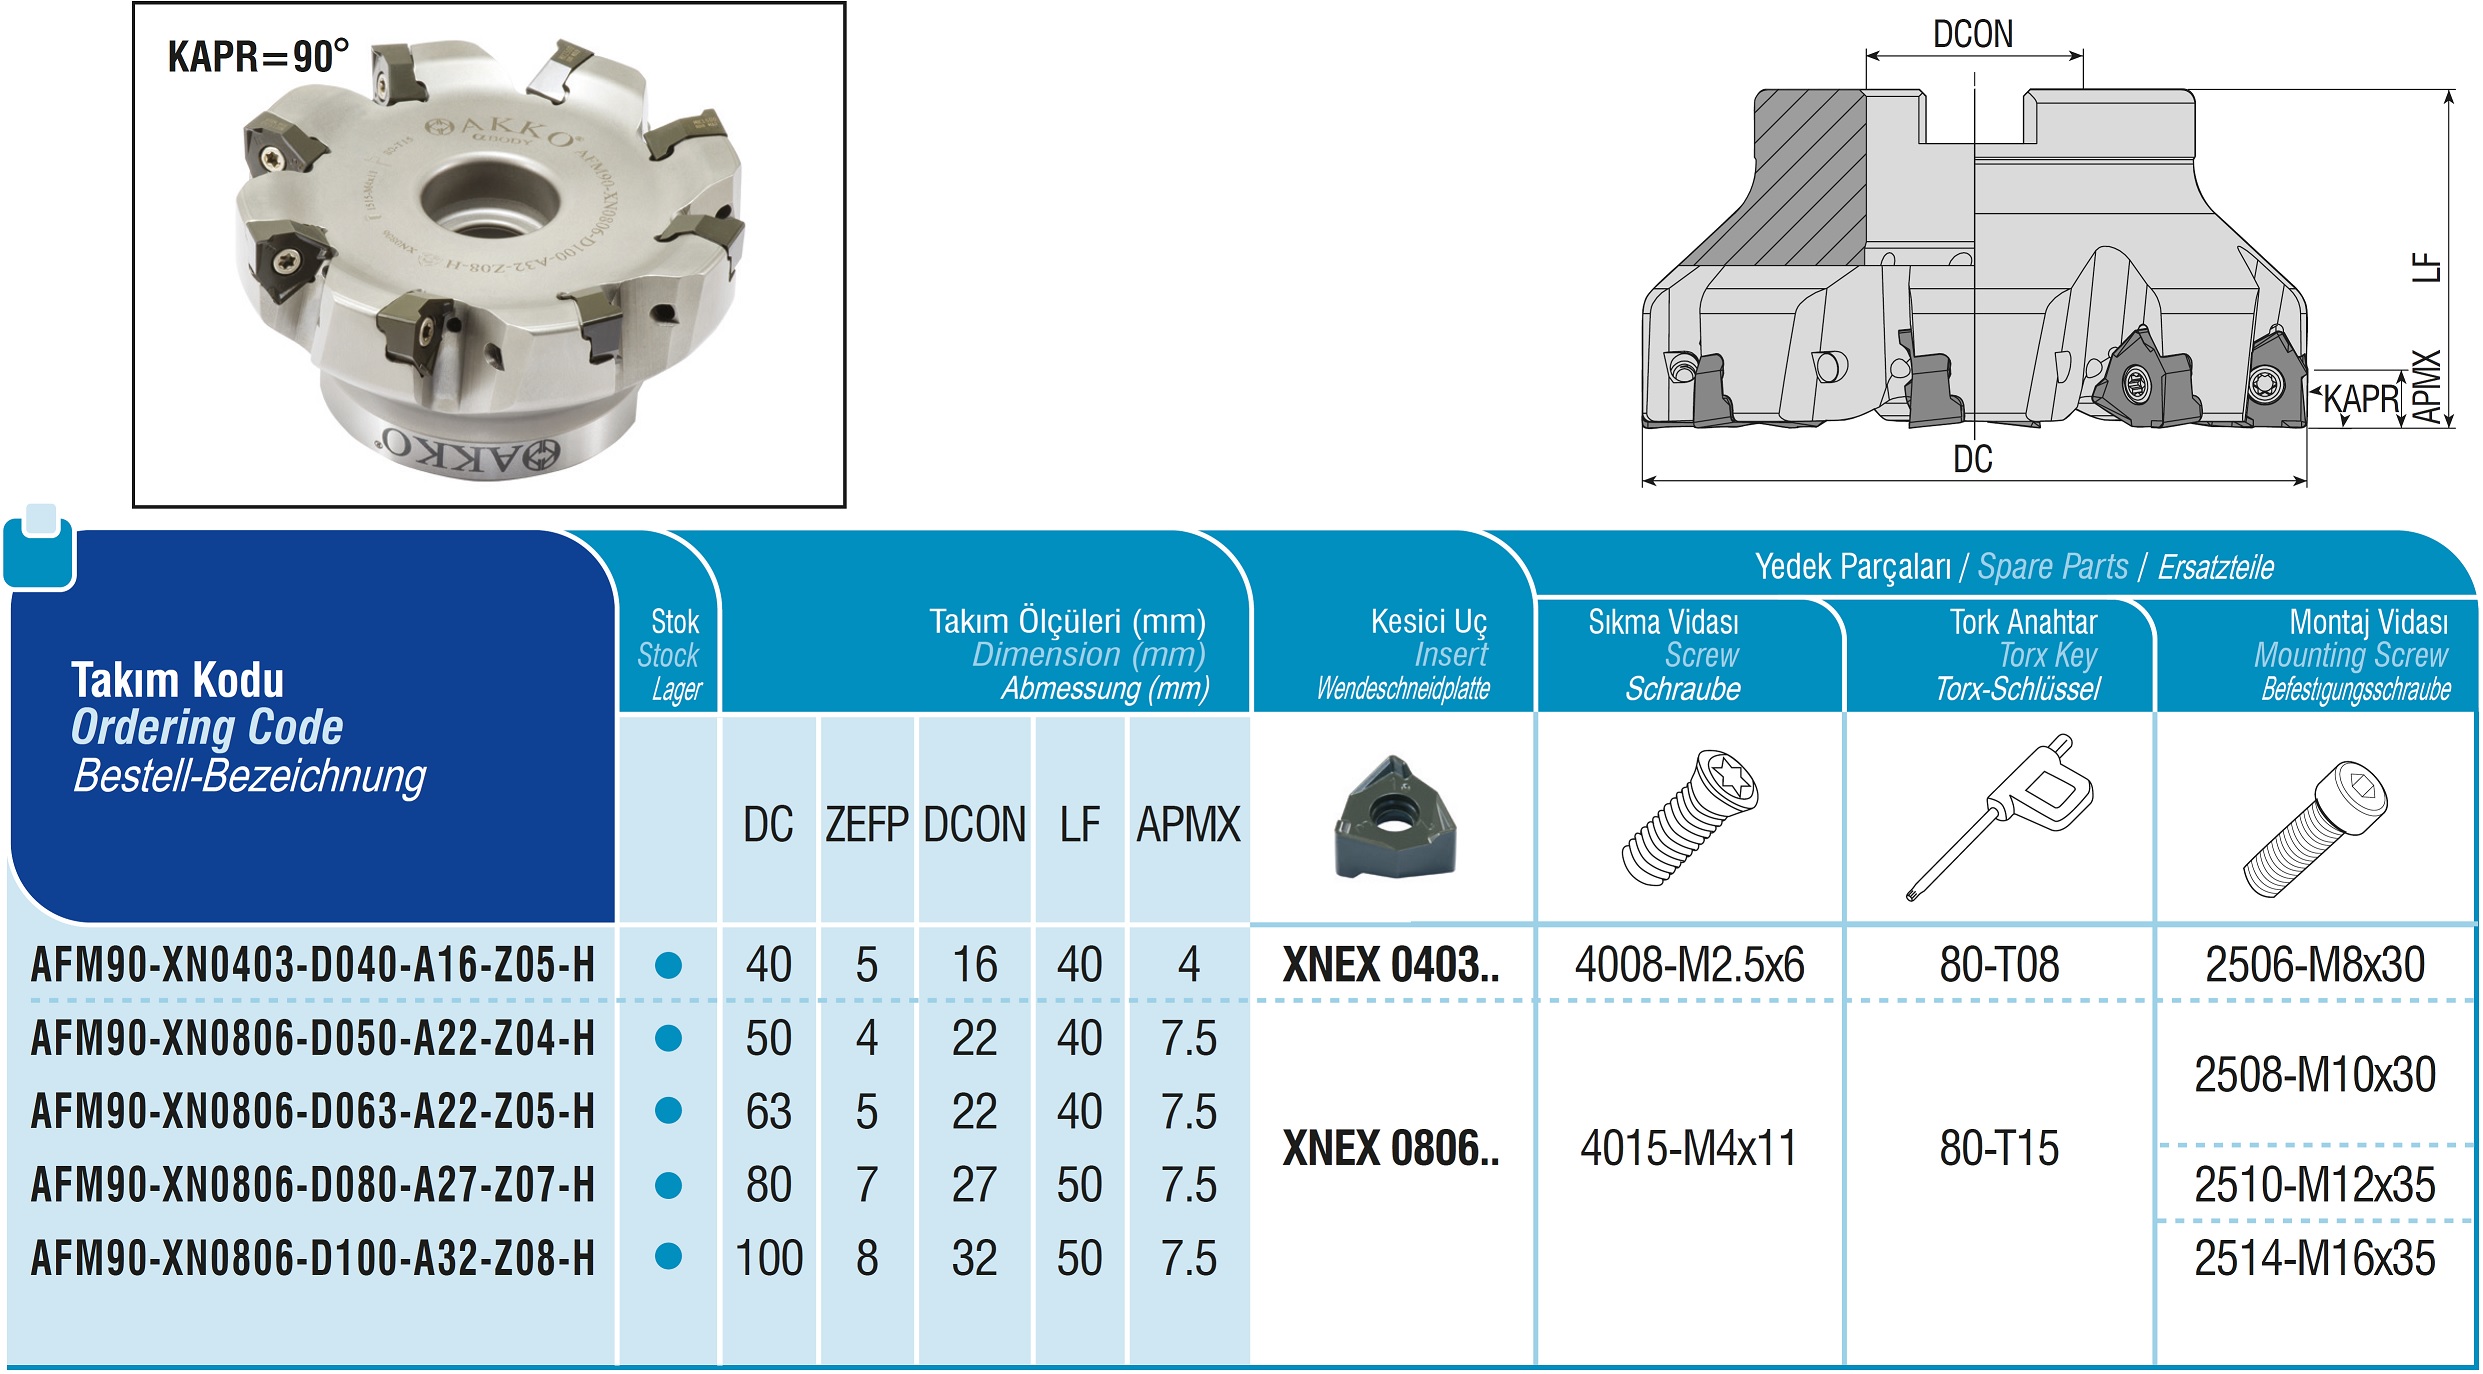 AKKO-Eckmesserkopf ø 40 mm, 90° Anstellwinkel, kompatibel mit Seco XNEX 0403..
Schaft-Ausführung ø 16 mm (Typ A), mit Innenkühlung, Z=5